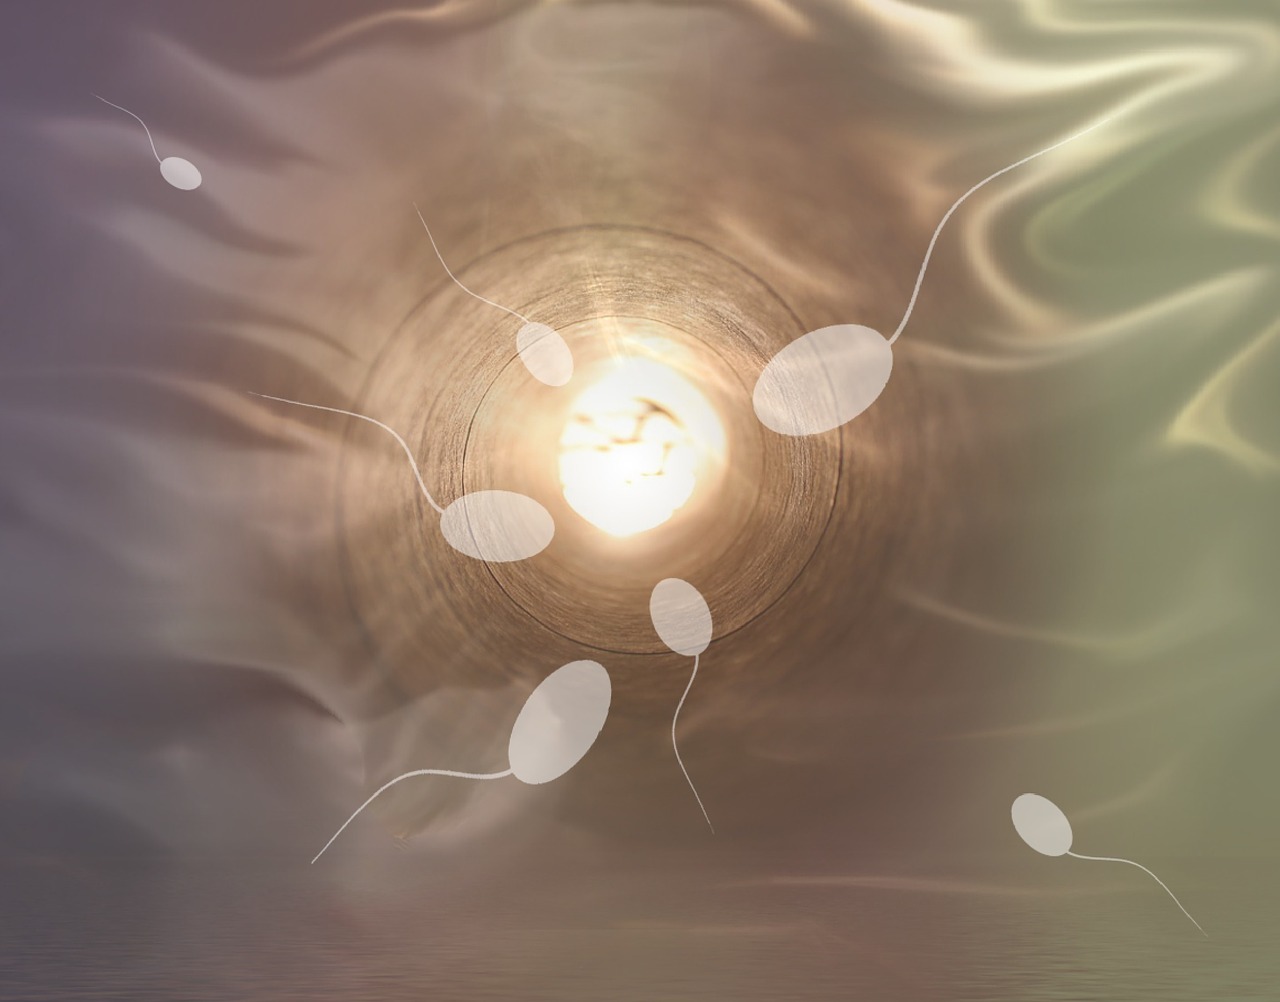 Подвижность сперматозоидов: как проверить активность, повышение активности малоподвижных спермиев